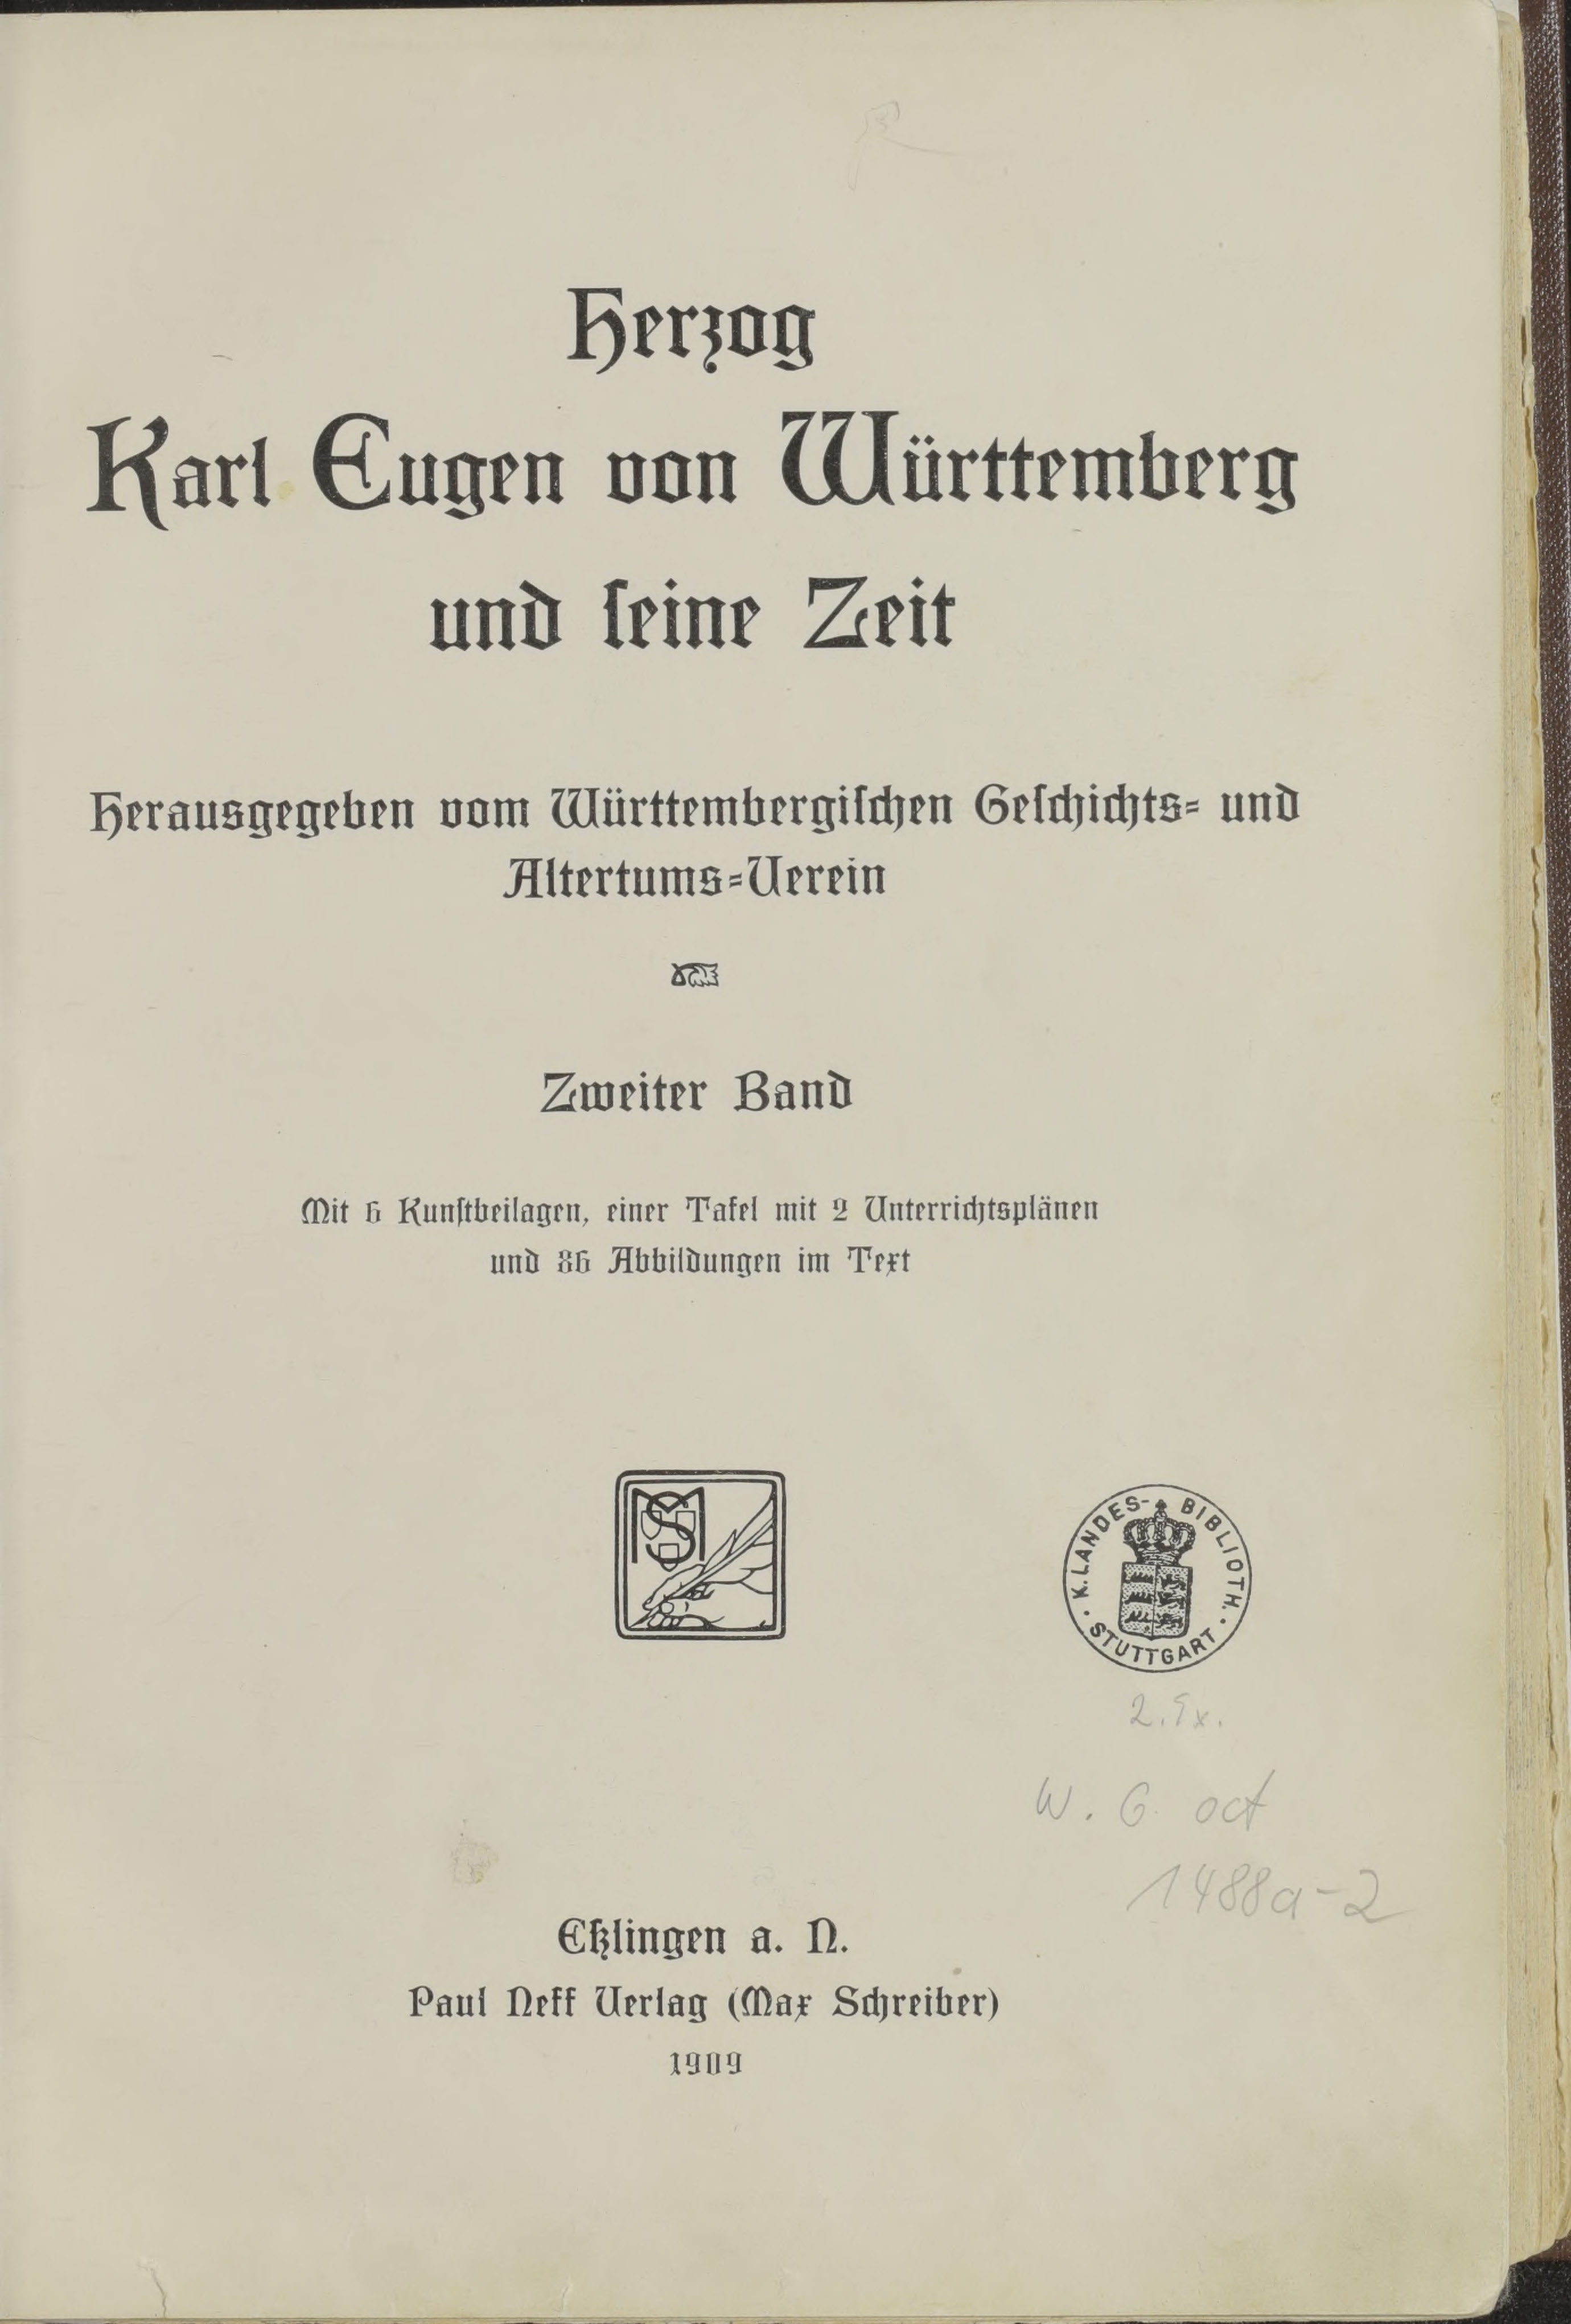 Herzog Karl Eugen von Württemberg und seine Zeit